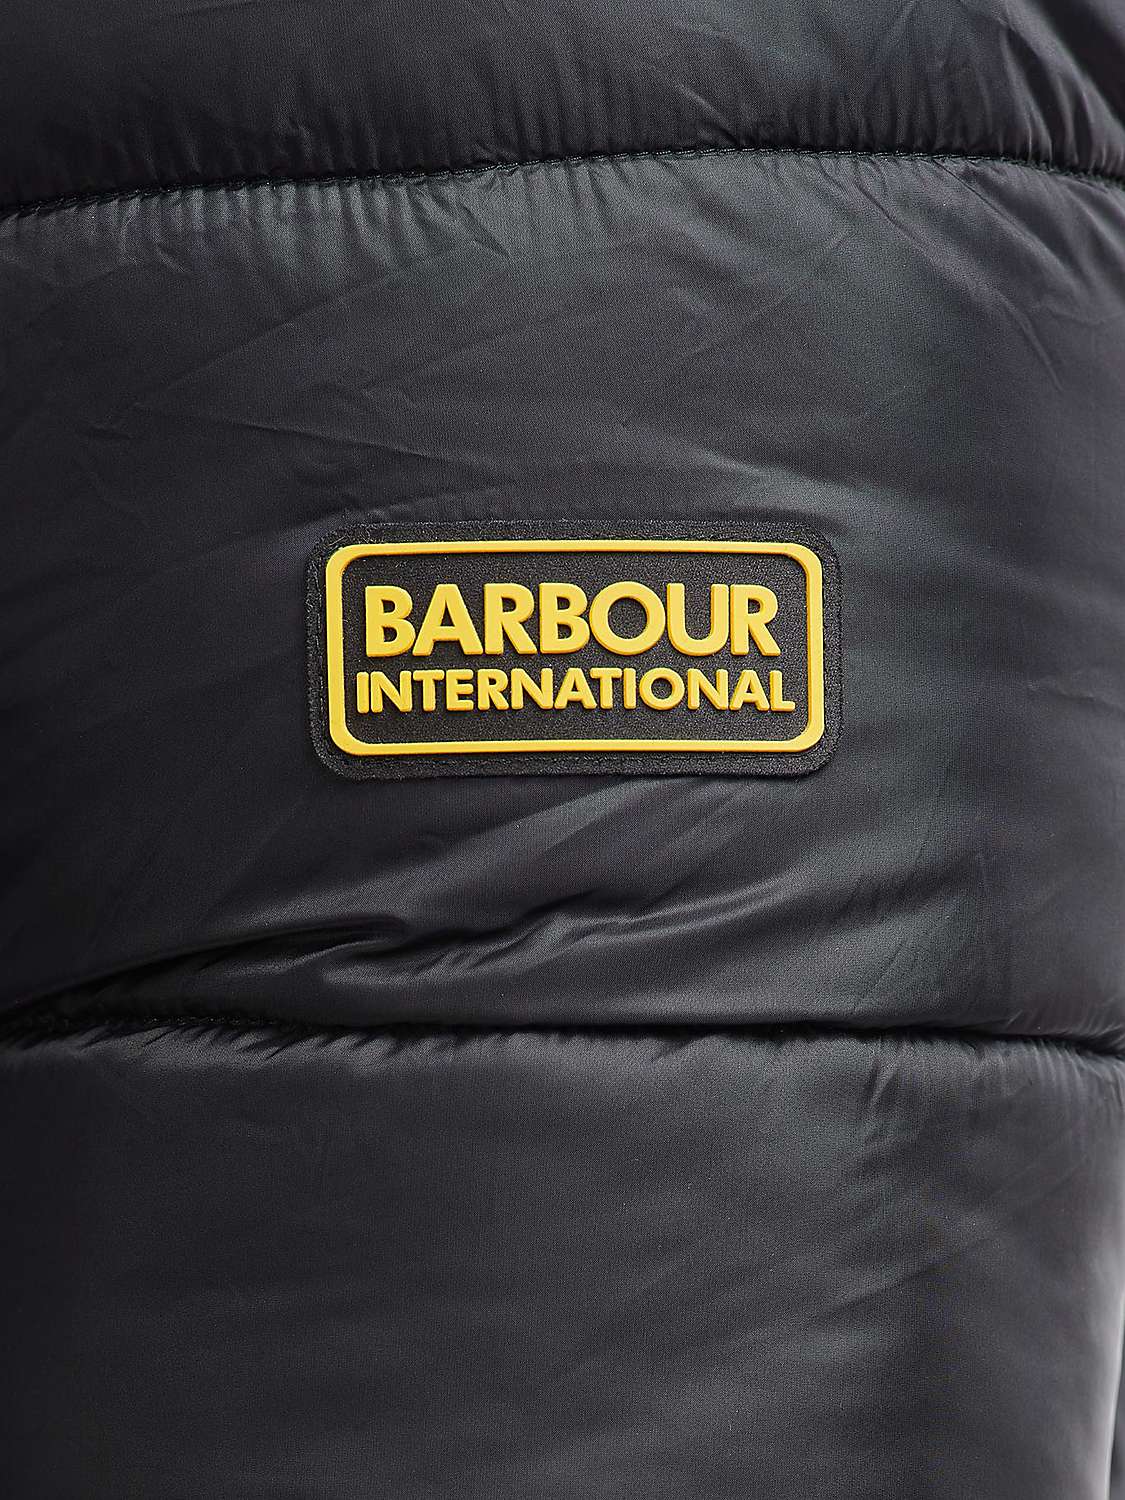 Buy Barbour International Bobber Puffer Jacket Online at johnlewis.com